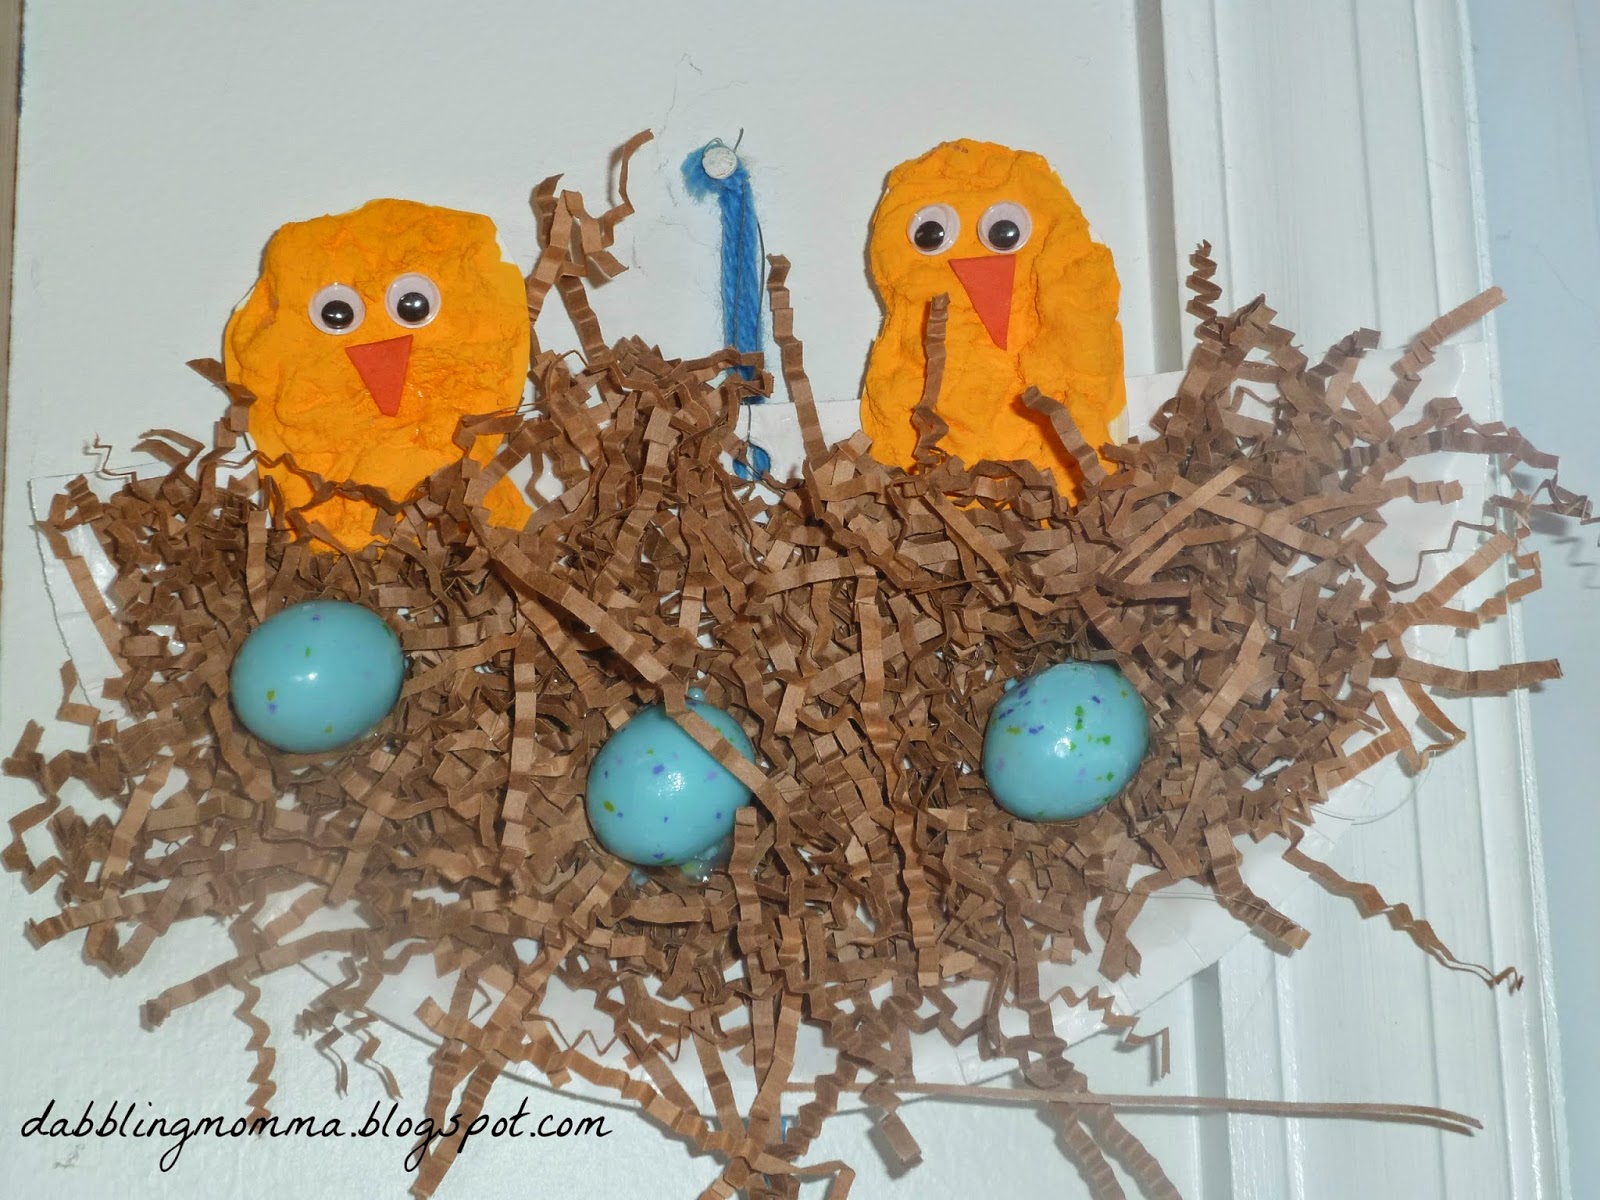 Dabblingmomma: Birds Nest With Eggs